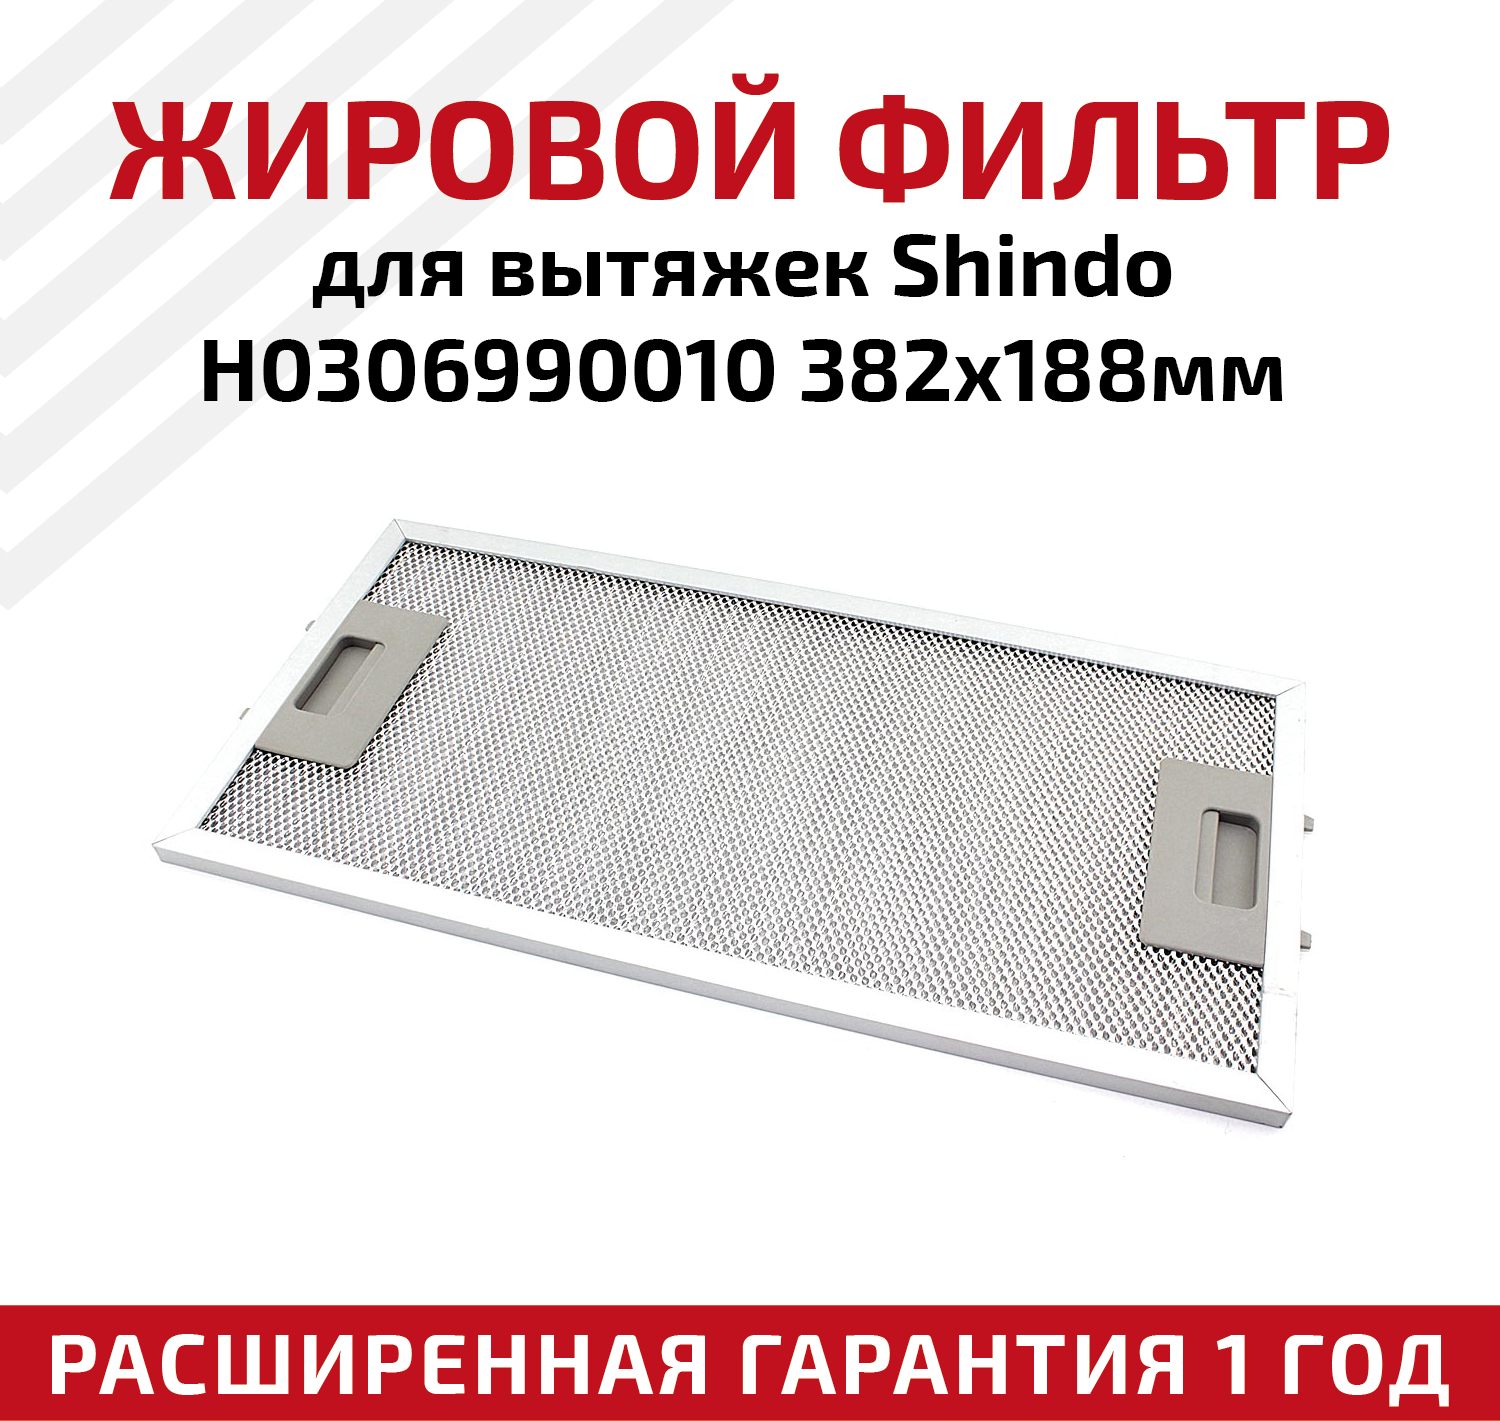 Жировой фильтр (кассета) алюминиевый (металлический) рамочный для кухонных вытяжек Shindo H0306990010, многоразовый, 382х188мм